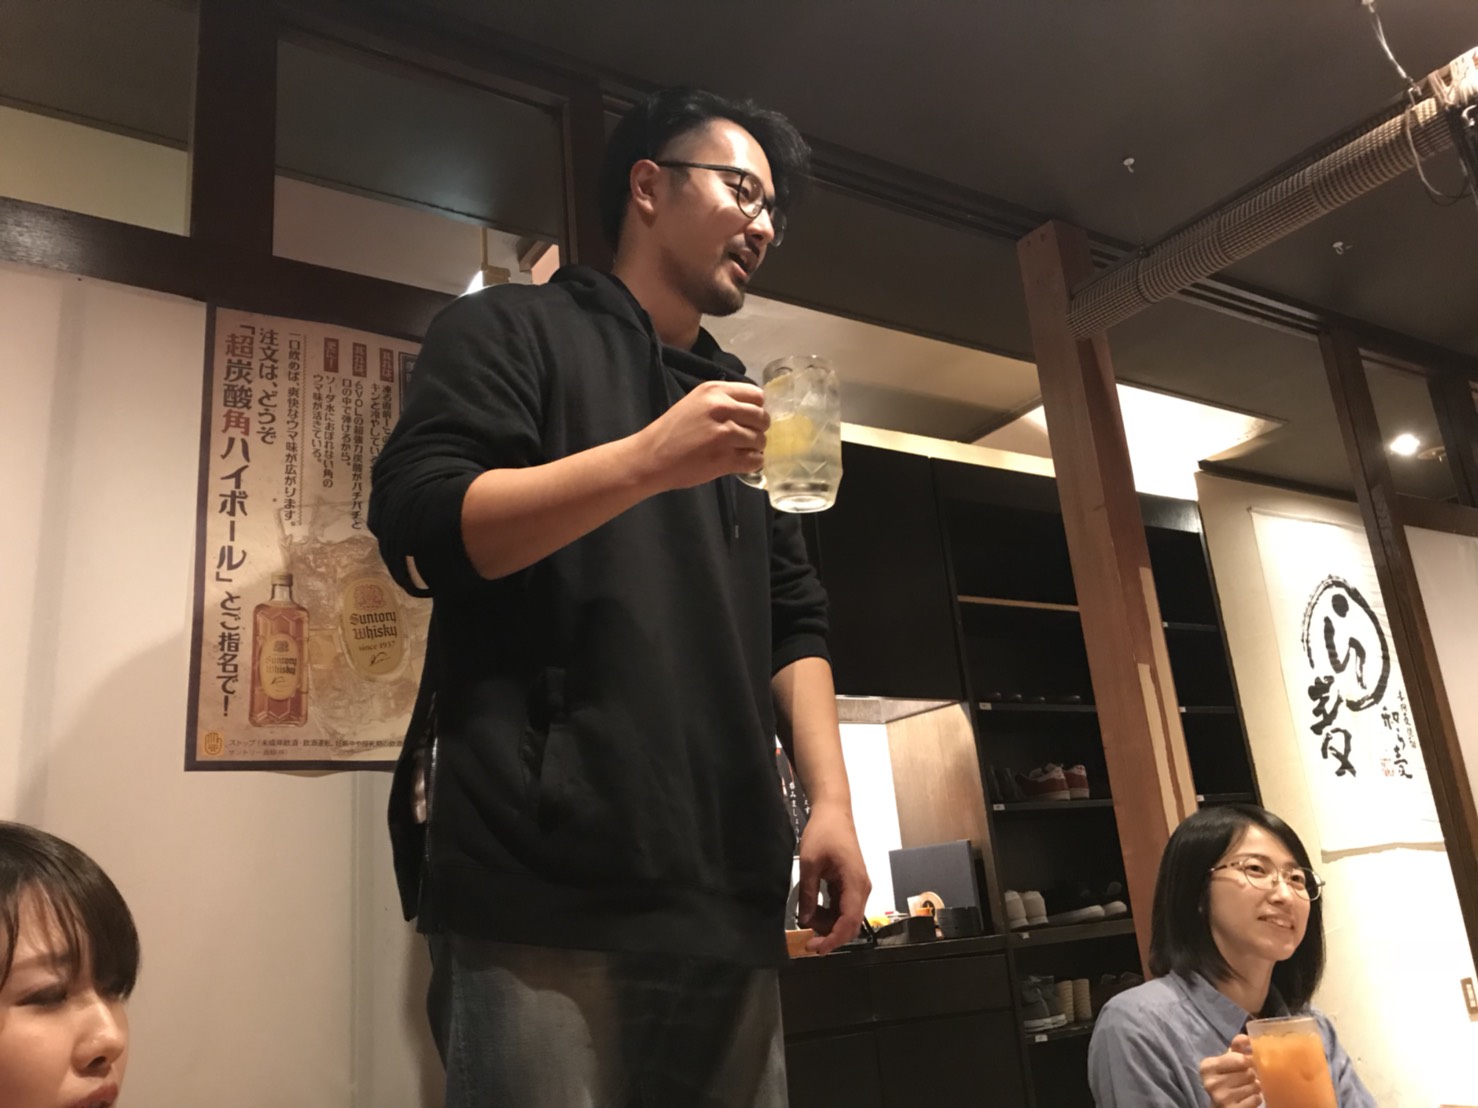 マーチャントクラブ第47回勉強会 in 北海道【最新のローンチ事情】